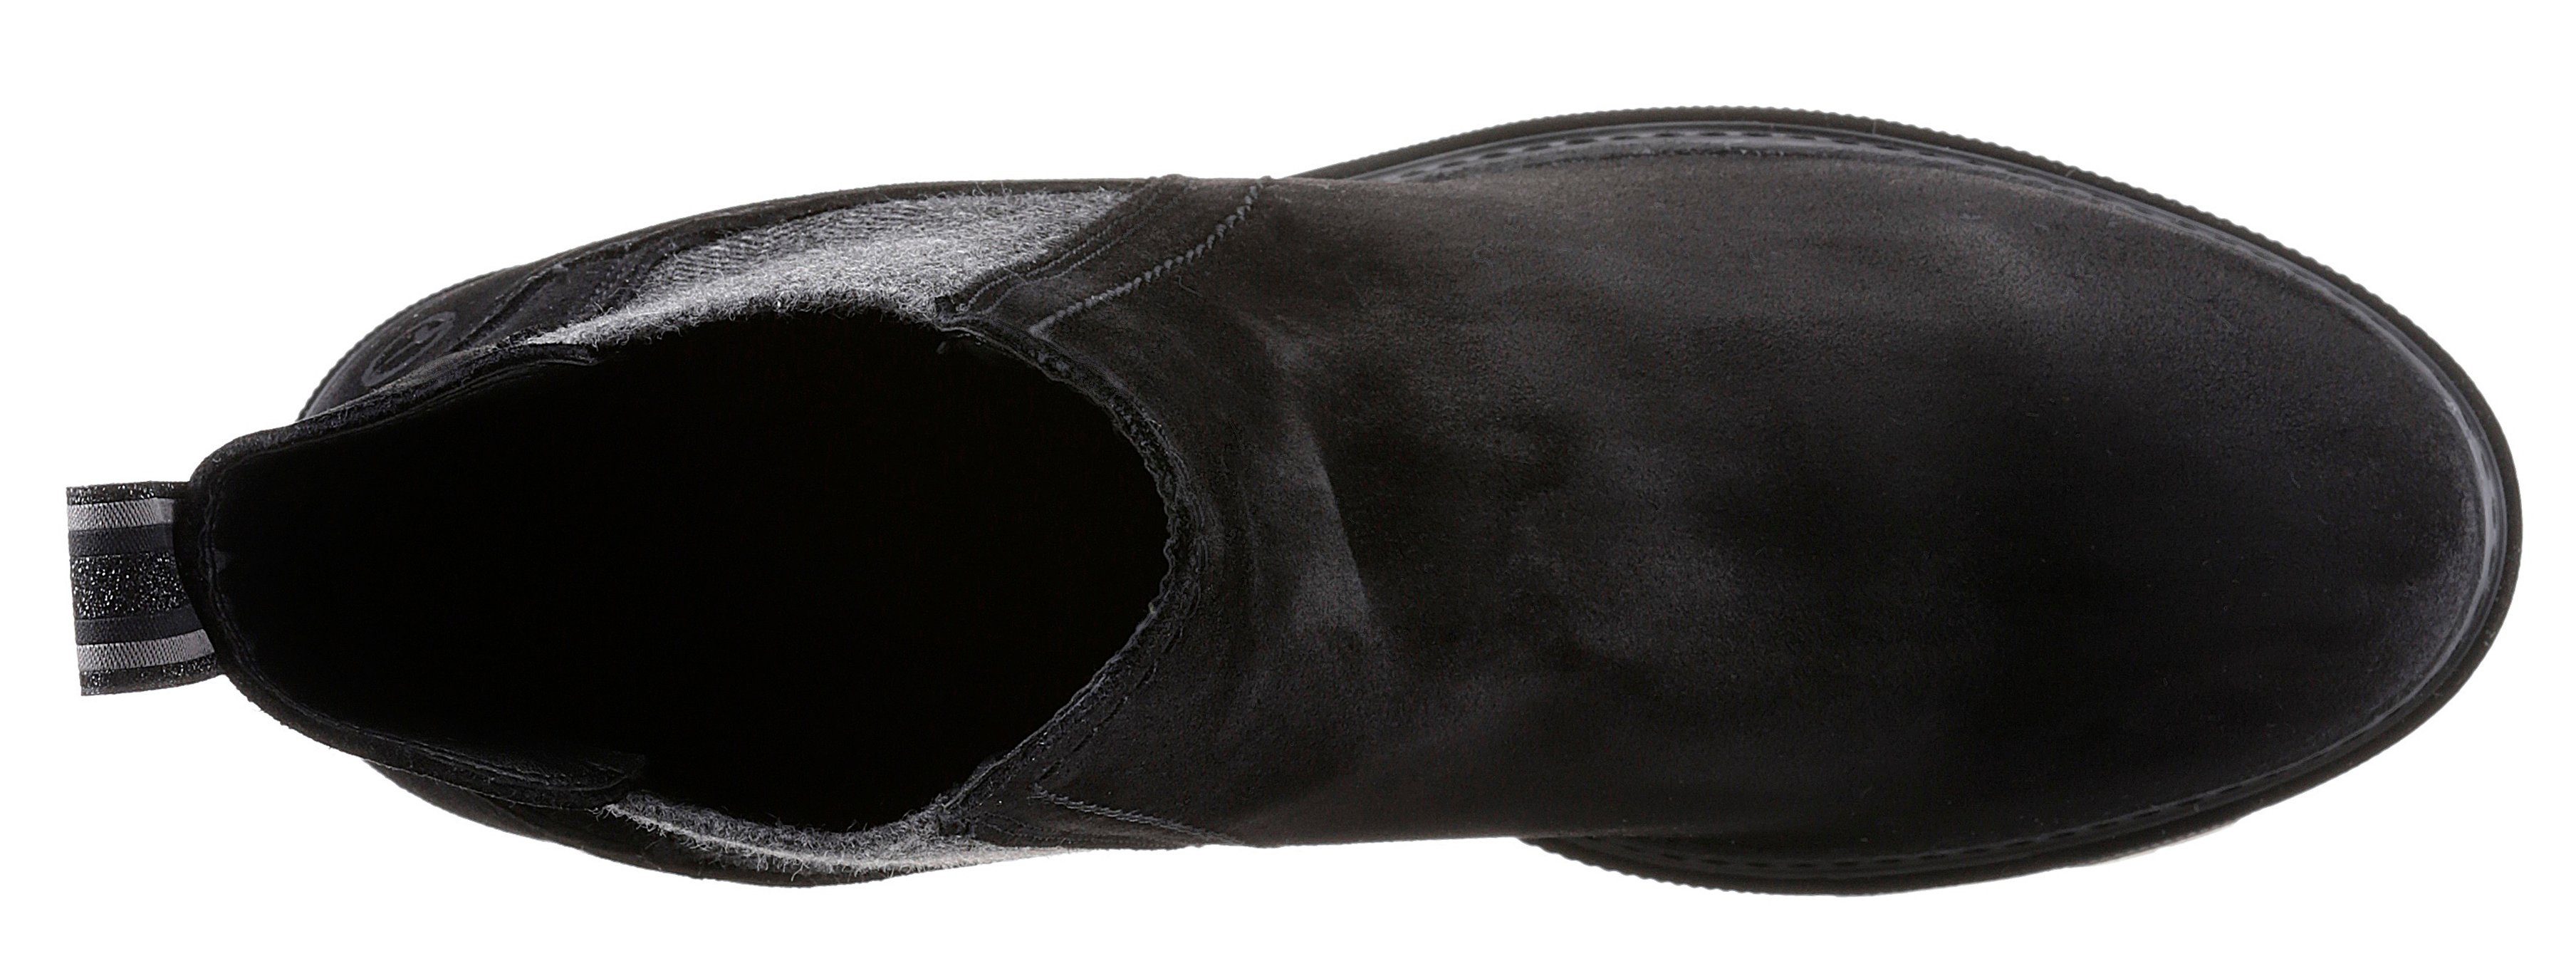 Stiefelette Tamaris Panna mit Streifenbesatz schwarz trendigen